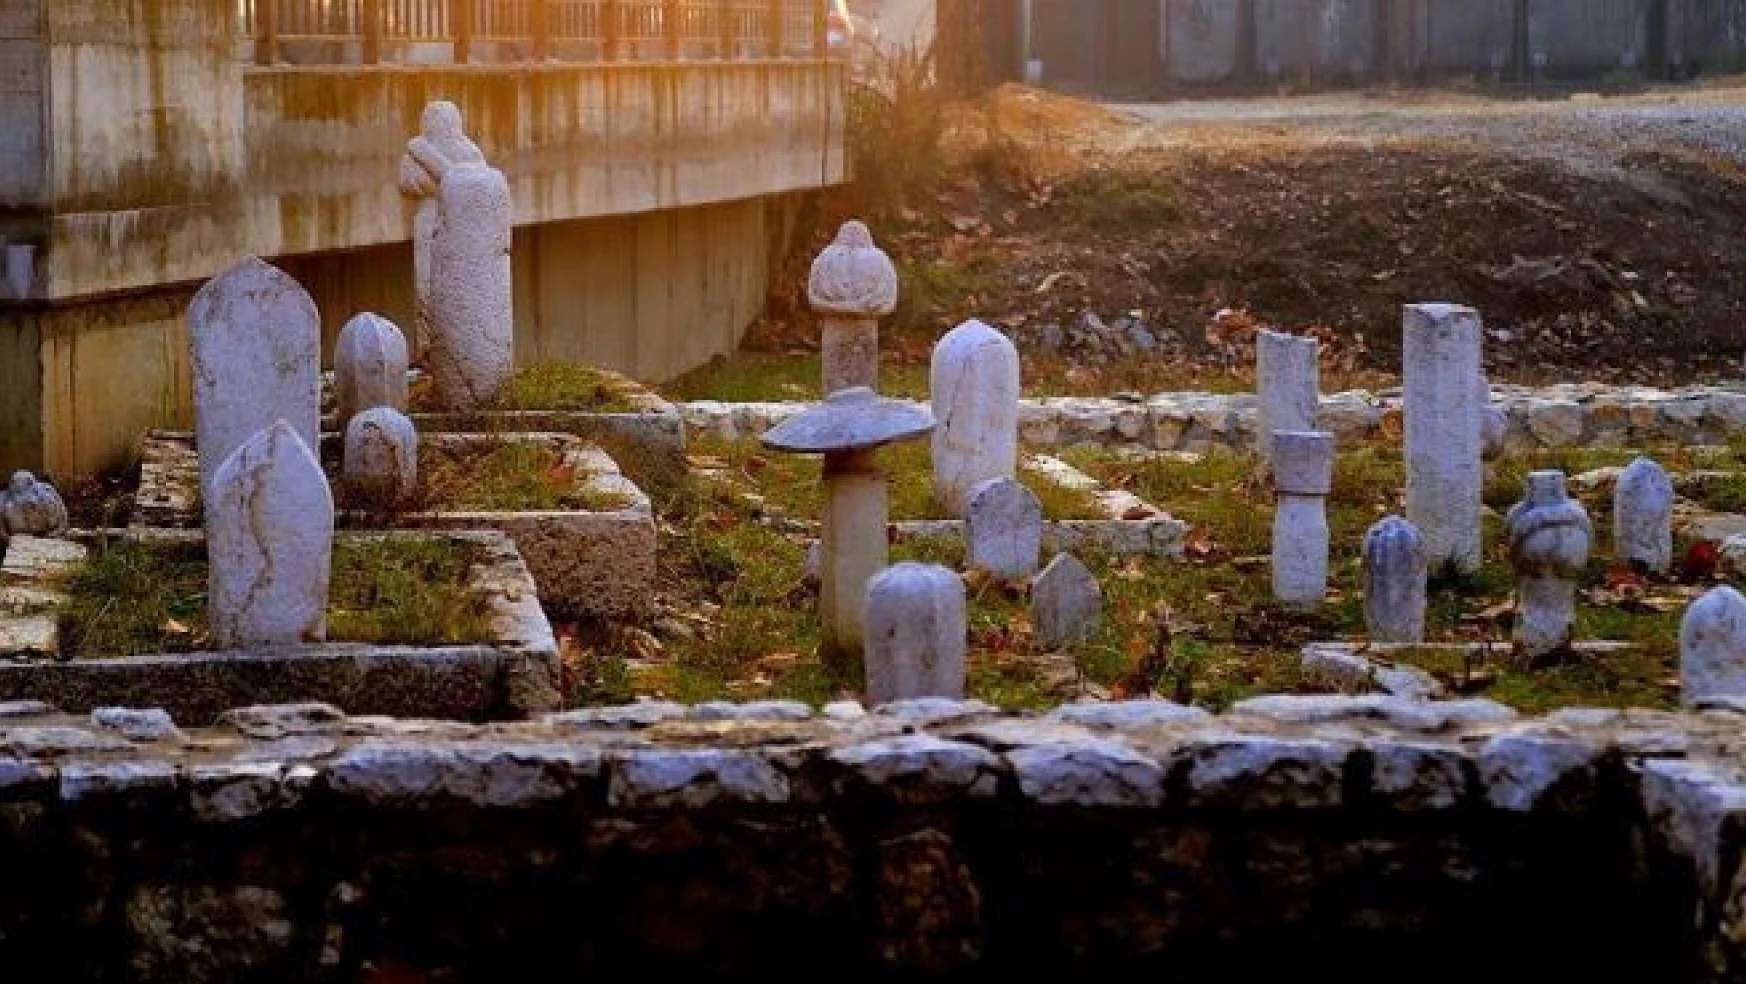 Osmanlı mirası mezar taşları gün yüzüne çıkarılıyor